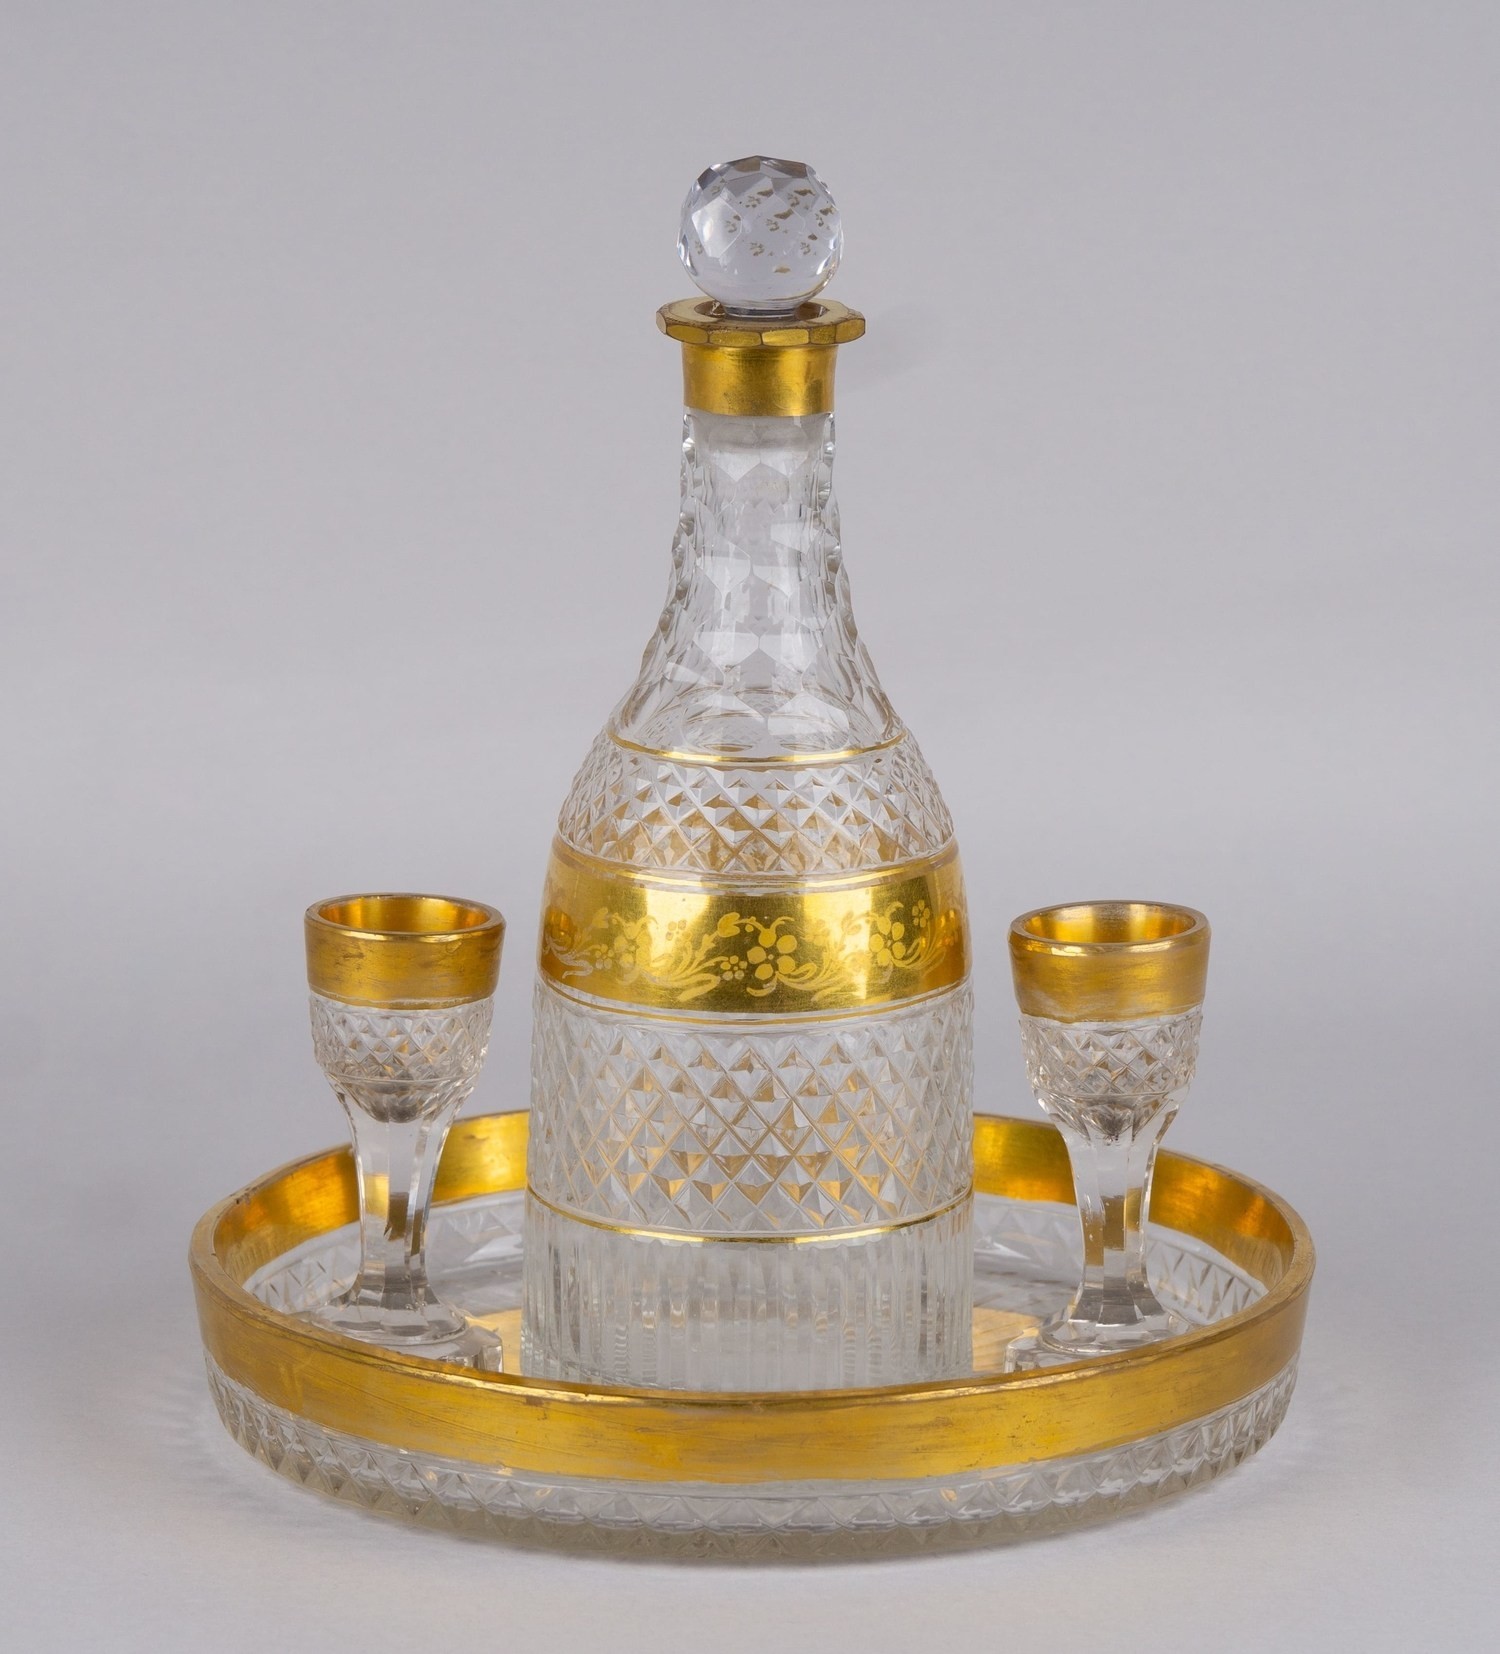 Водочный набор из граненого стекла с золочением. Россия, частный стекольный завод, конец XVIII-начало XIX века.